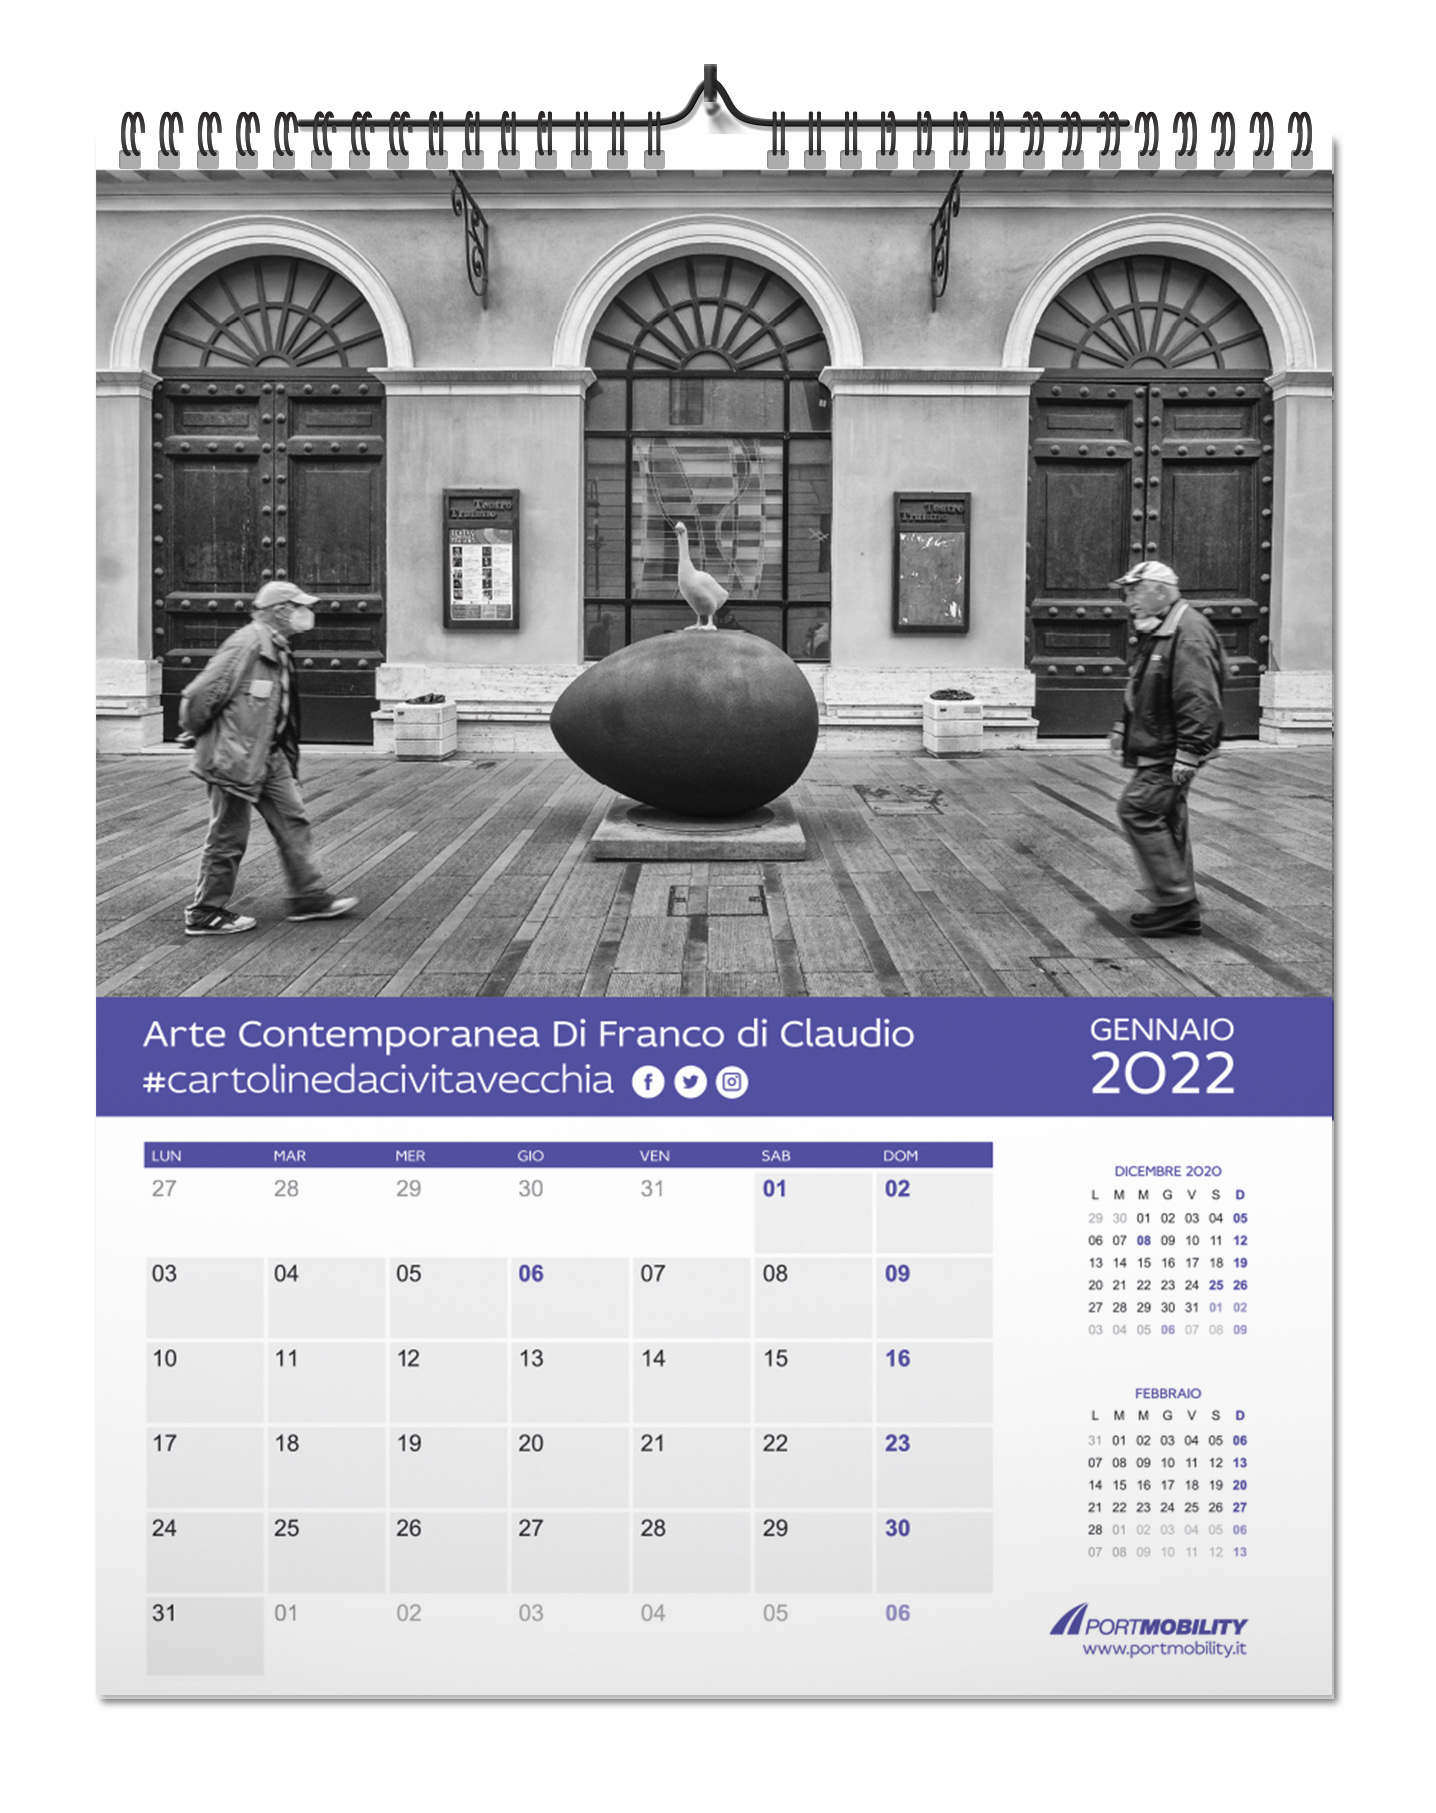 Cartoline da Civitavecchia 2022: il mese di gennaio